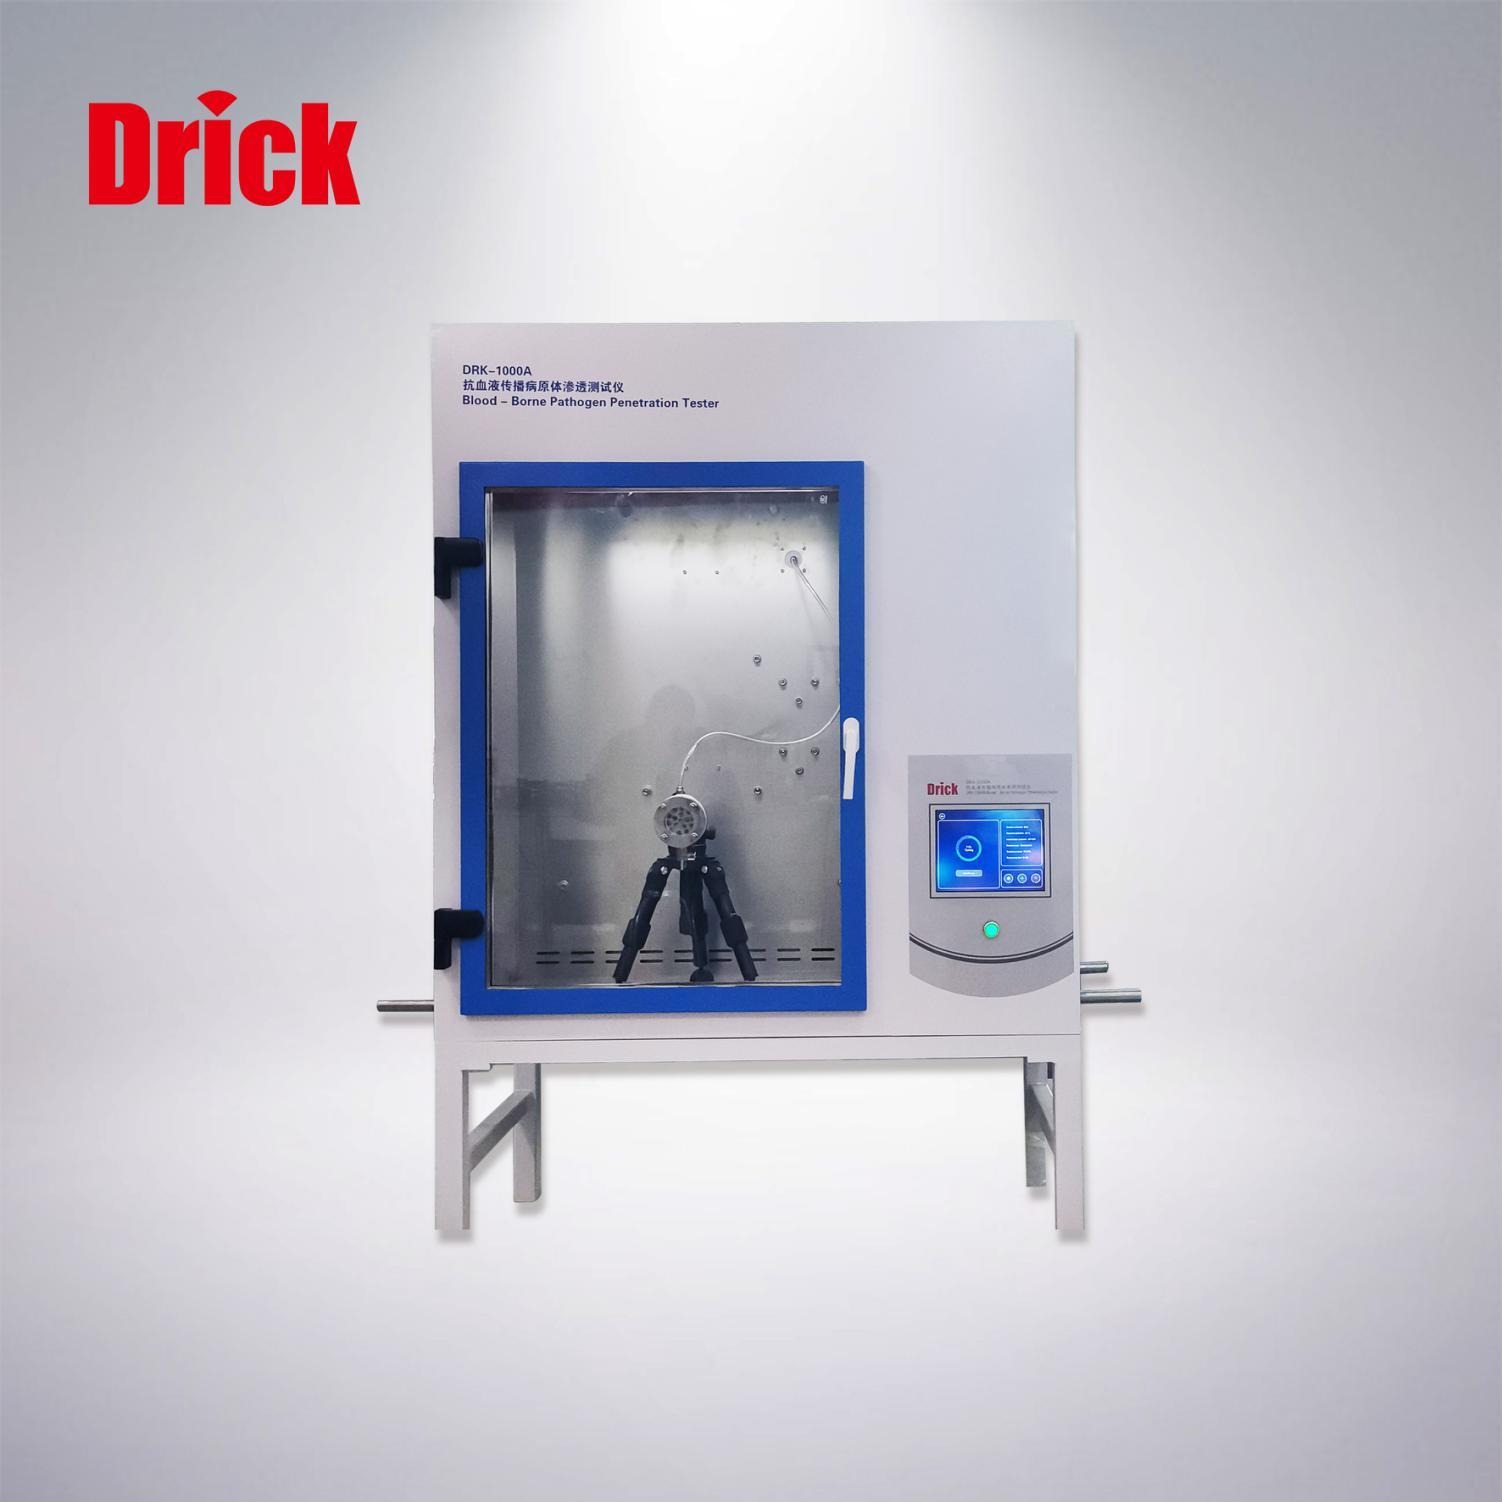 德瑞克DRK-1000A型抗血液传播病原体渗透测试仪  用来测试防护服对血液和体液、对血液病原体等的抗渗透性。